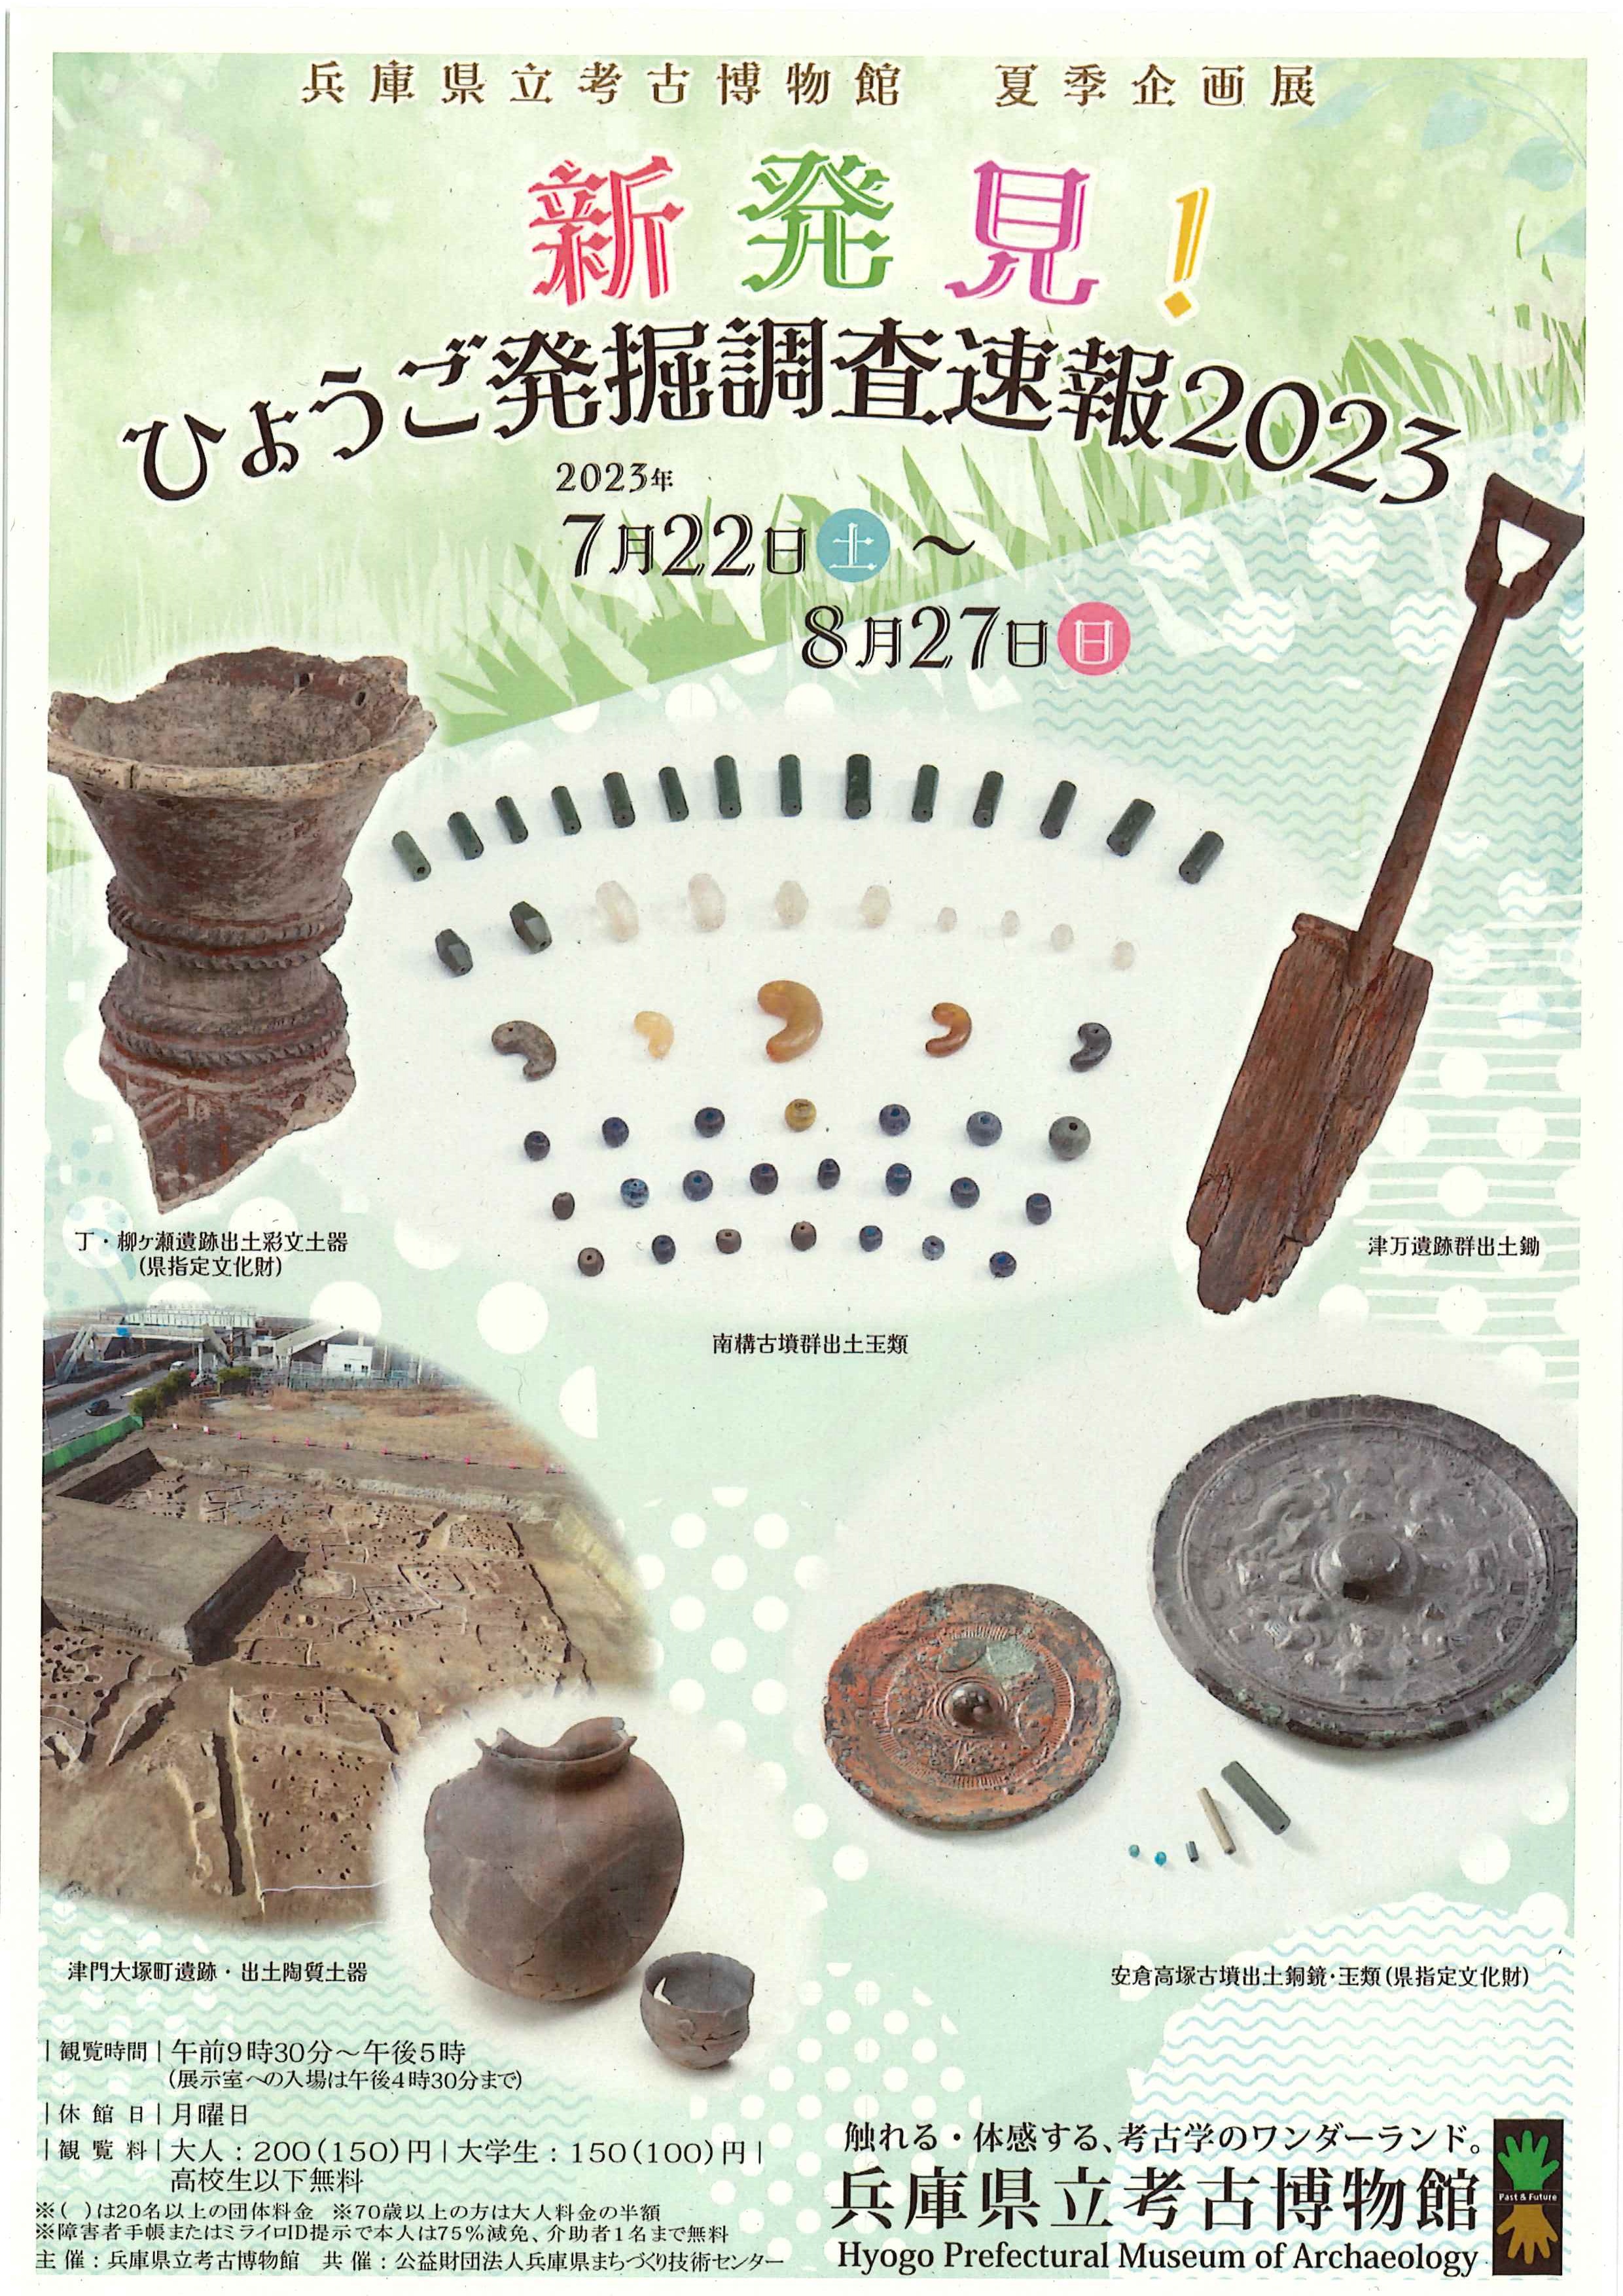 兵庫県立考古博物館夏季企画展「ひょうご発掘調査速報2023」